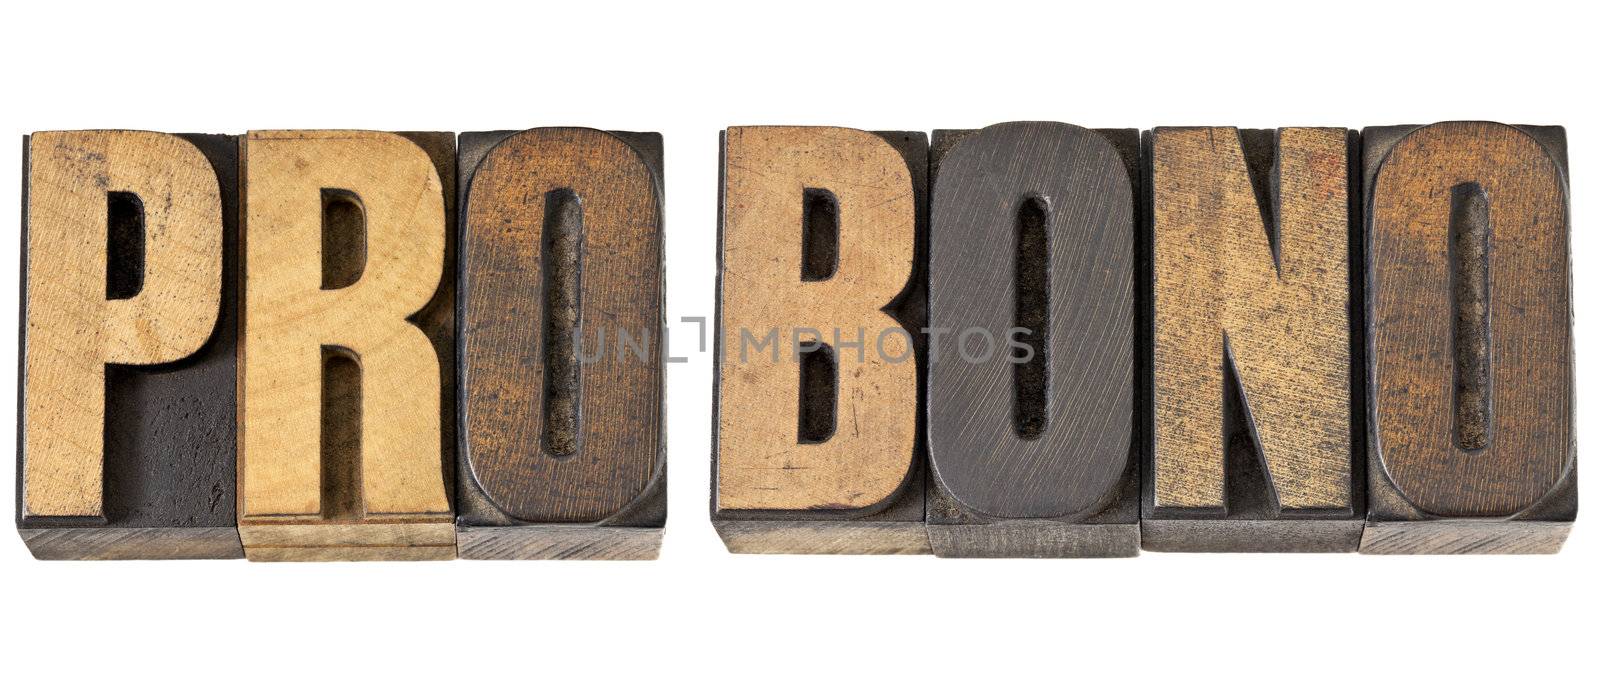 pro bono word in wood type by PixelsAway